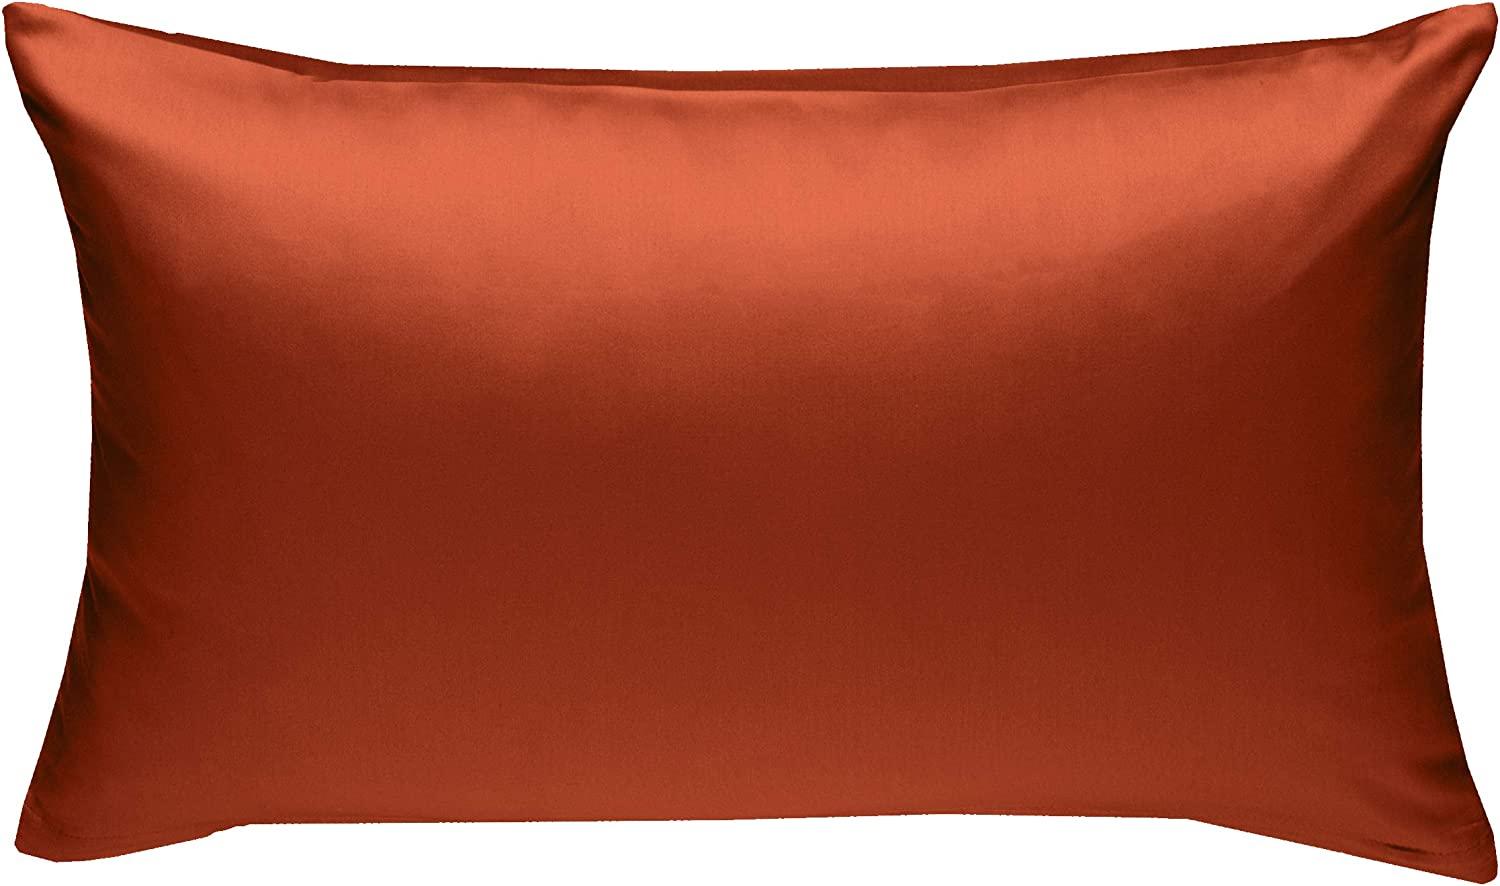 Bettwaesche-mit-Stil Mako-Satin / Baumwollsatin Bettwäsche uni / einfarbig orange Kissenbezug 60x80 cm Bild 1